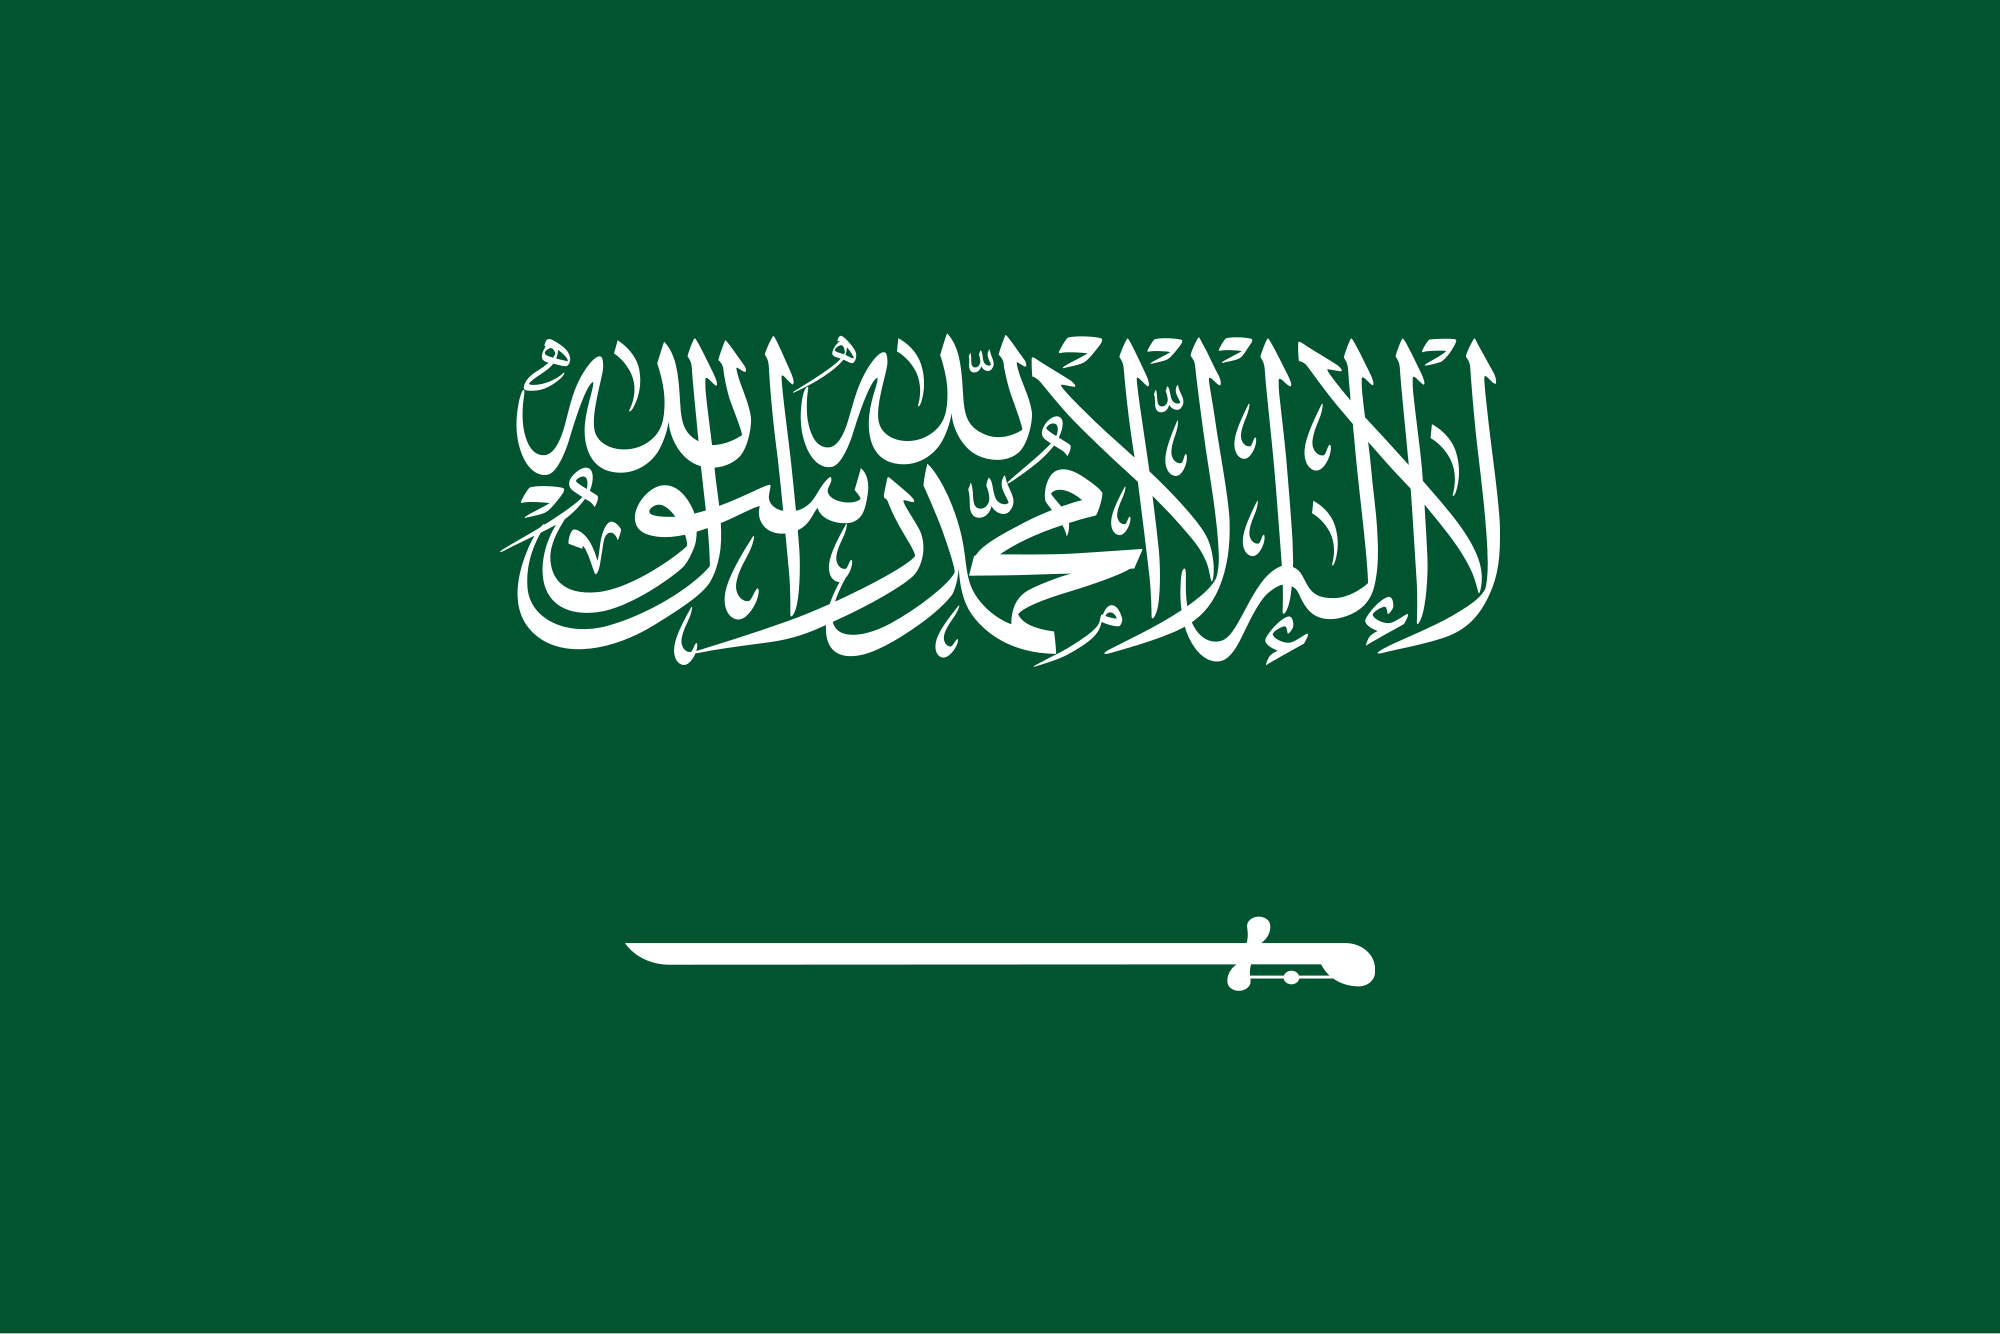 نتيجة بحث الصور عن اليوم الوطني للمملكة العربية السعودية